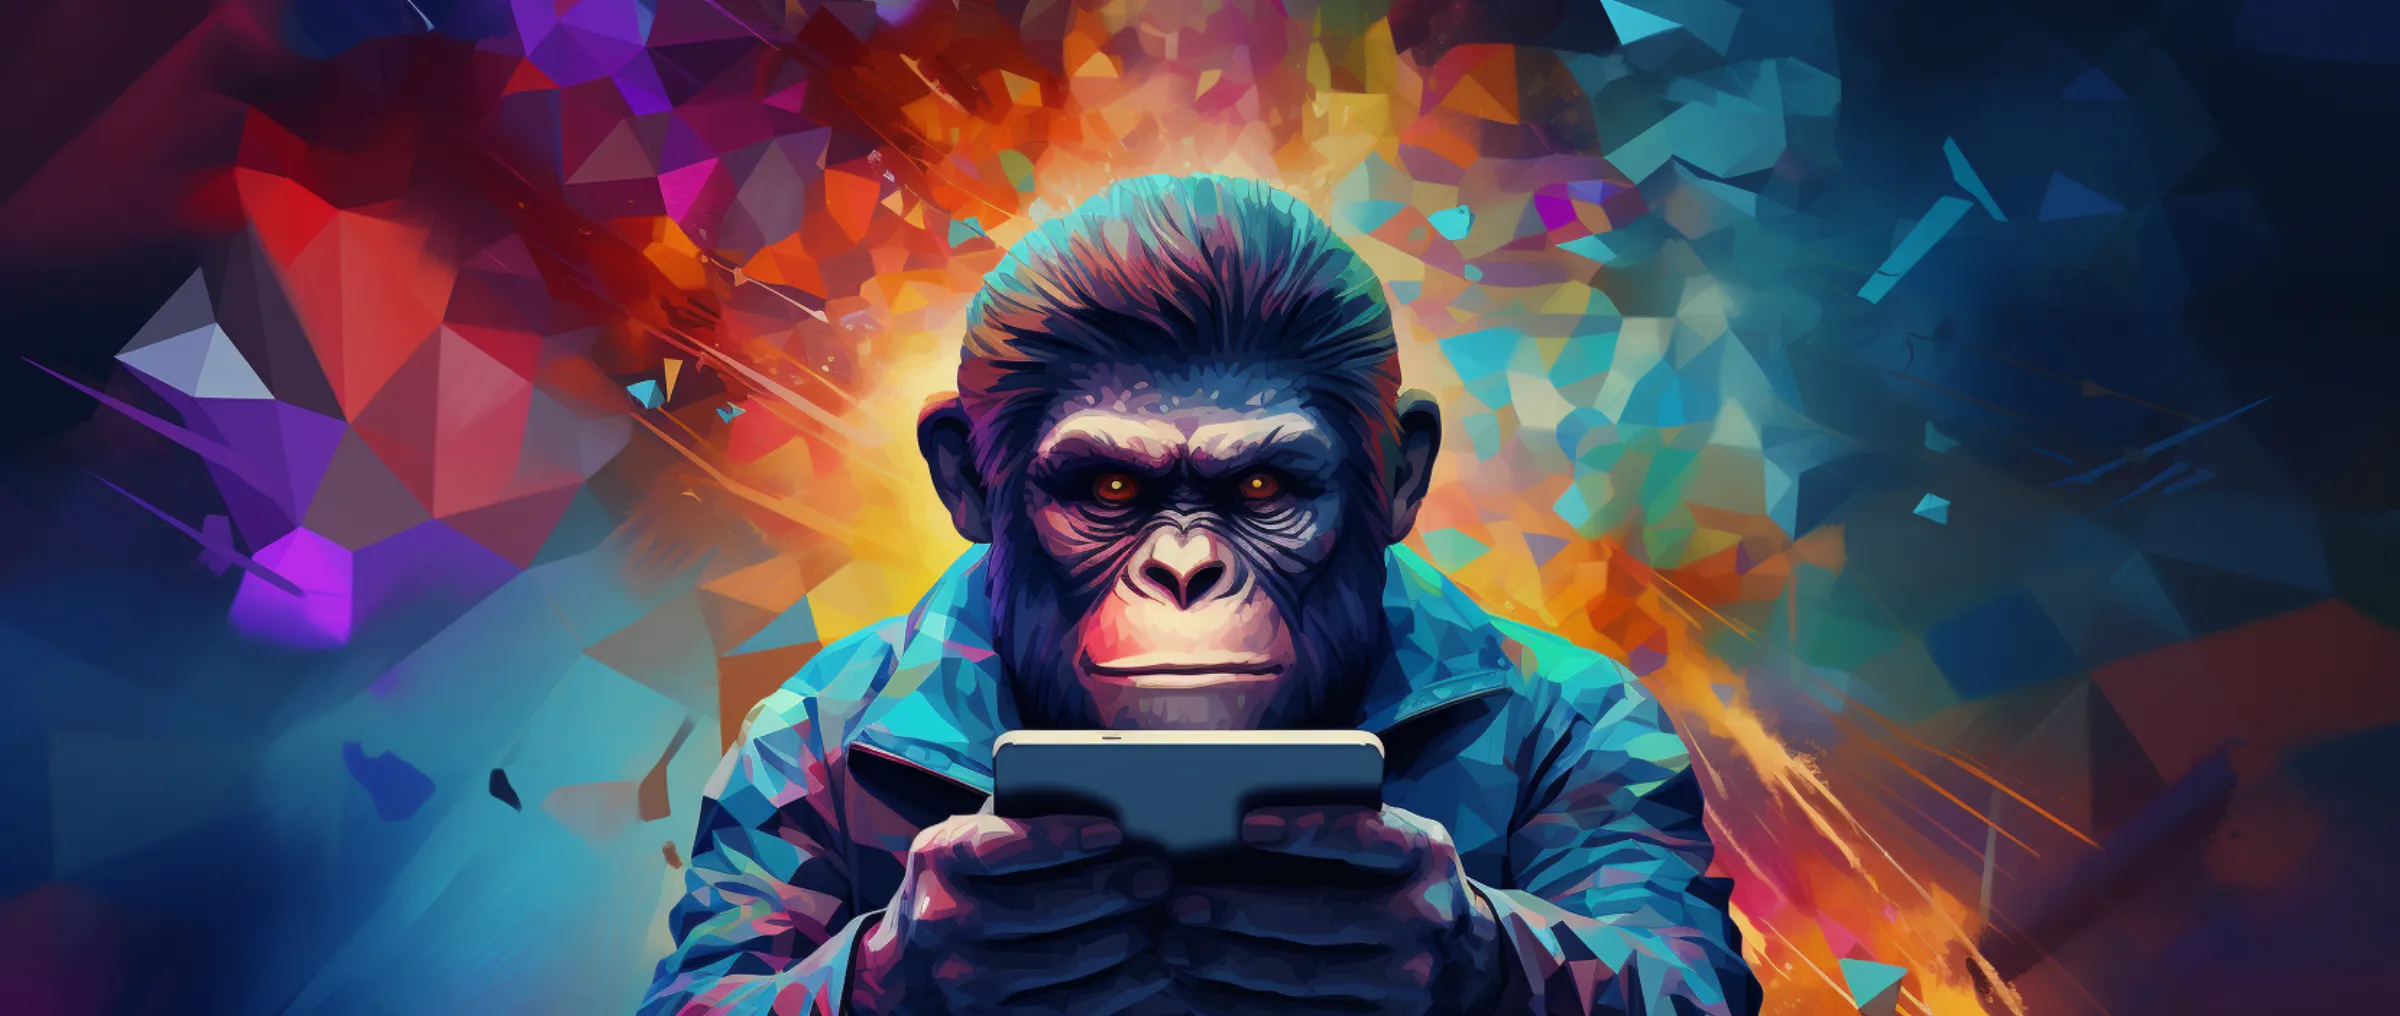 Хакерская сага NFT: искусство, обман и возвращение обезьян